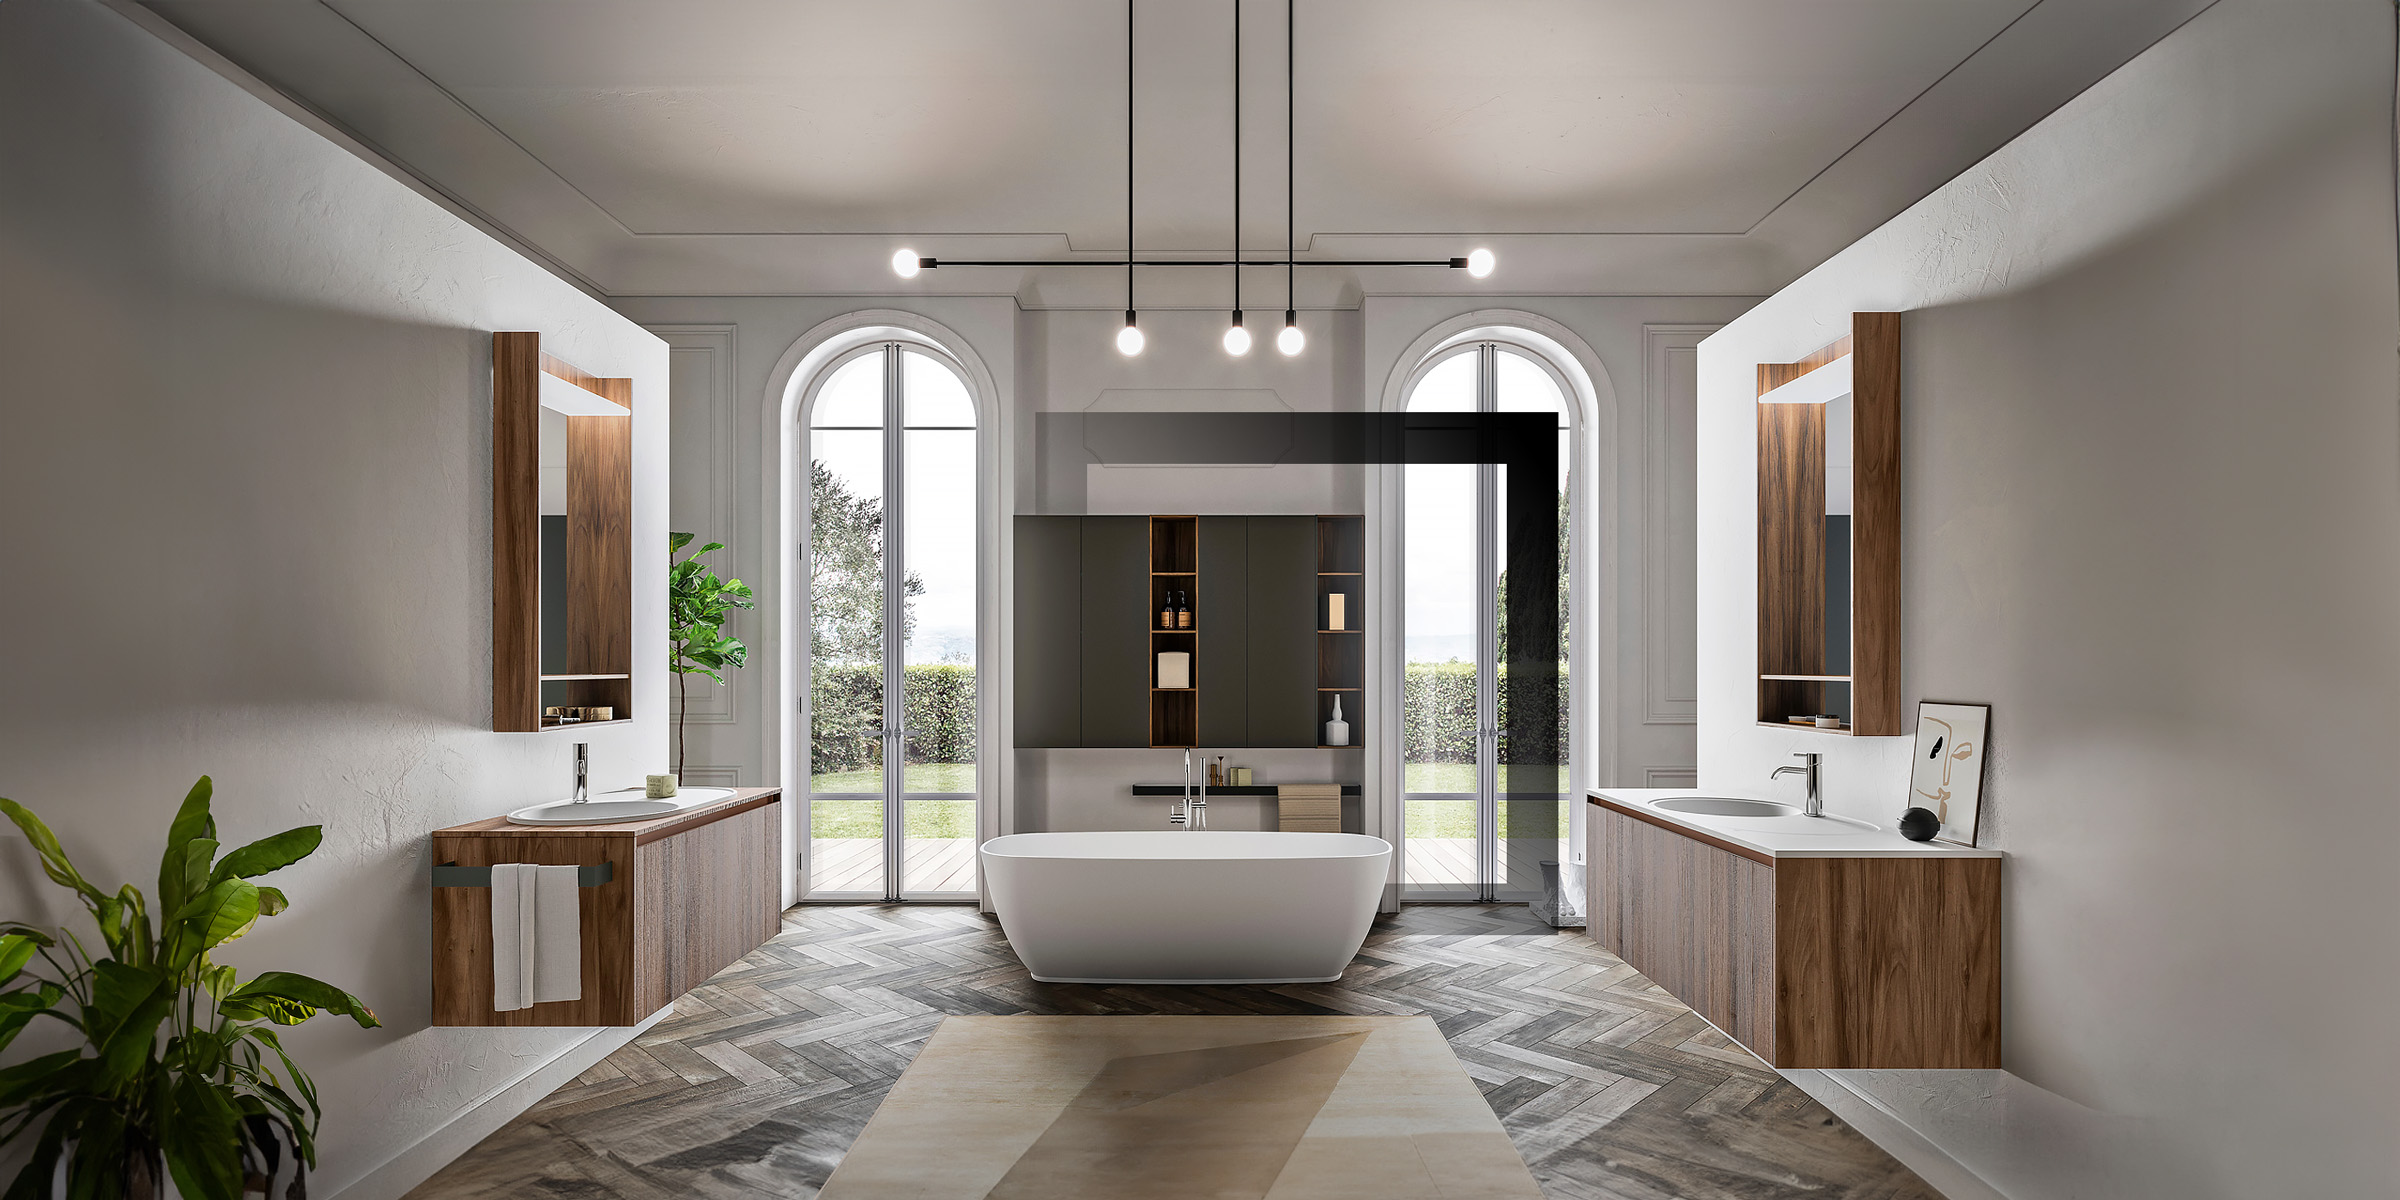 Salle de bain haut de gamme avec baignoire modèle Lady Cerasa et meubles vasques en bois